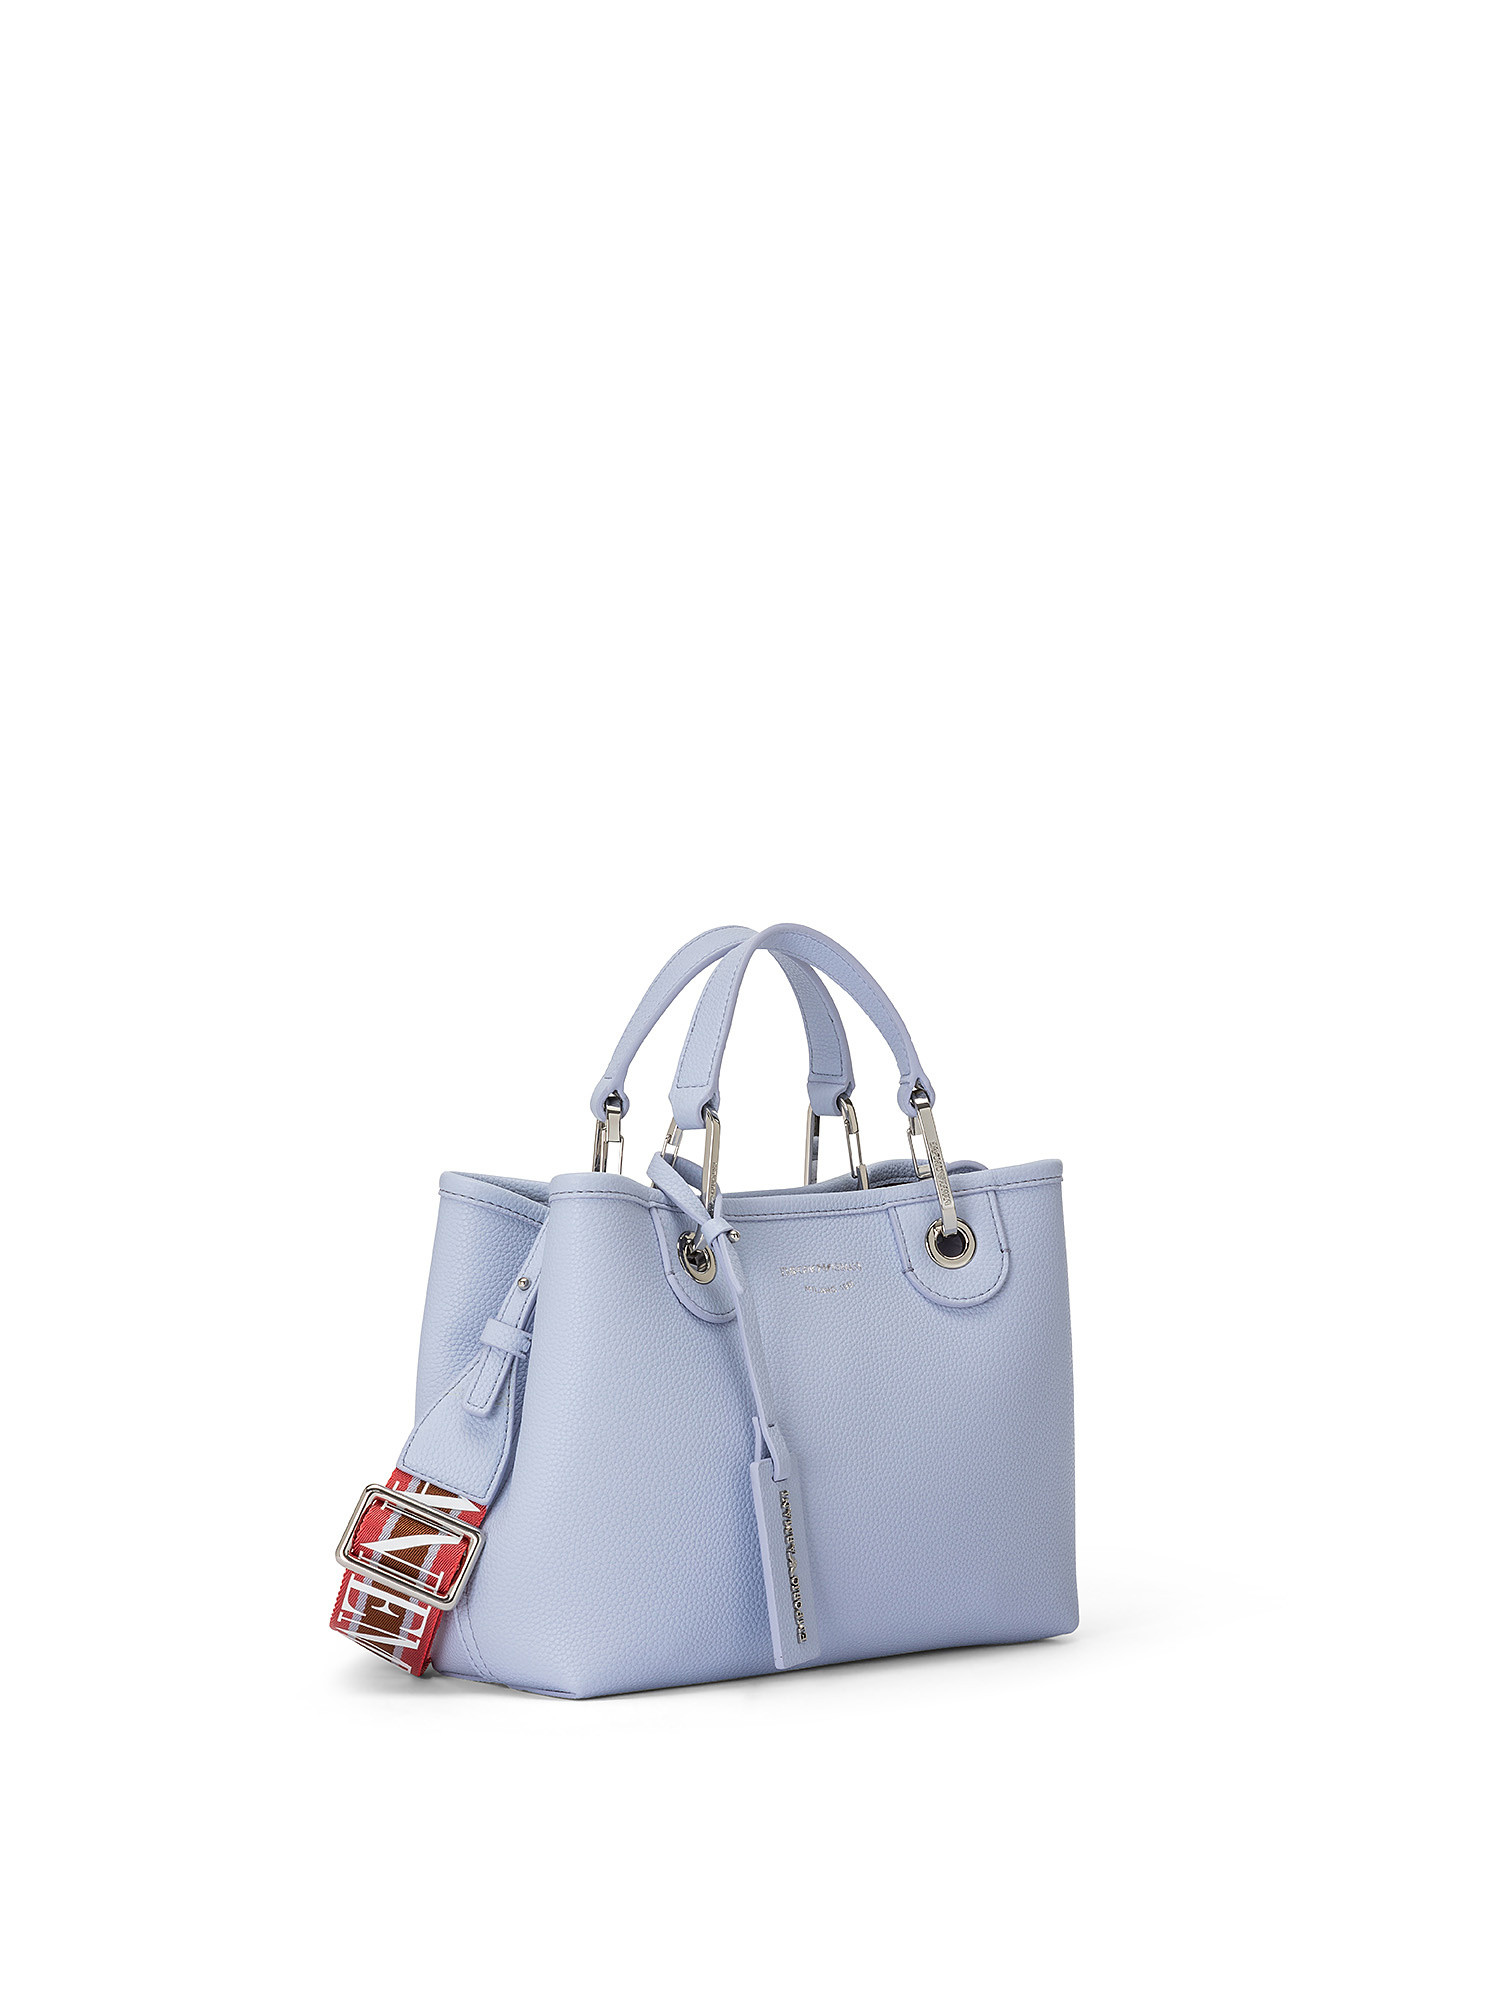 Shopping bag, Light Blue, large image number 1